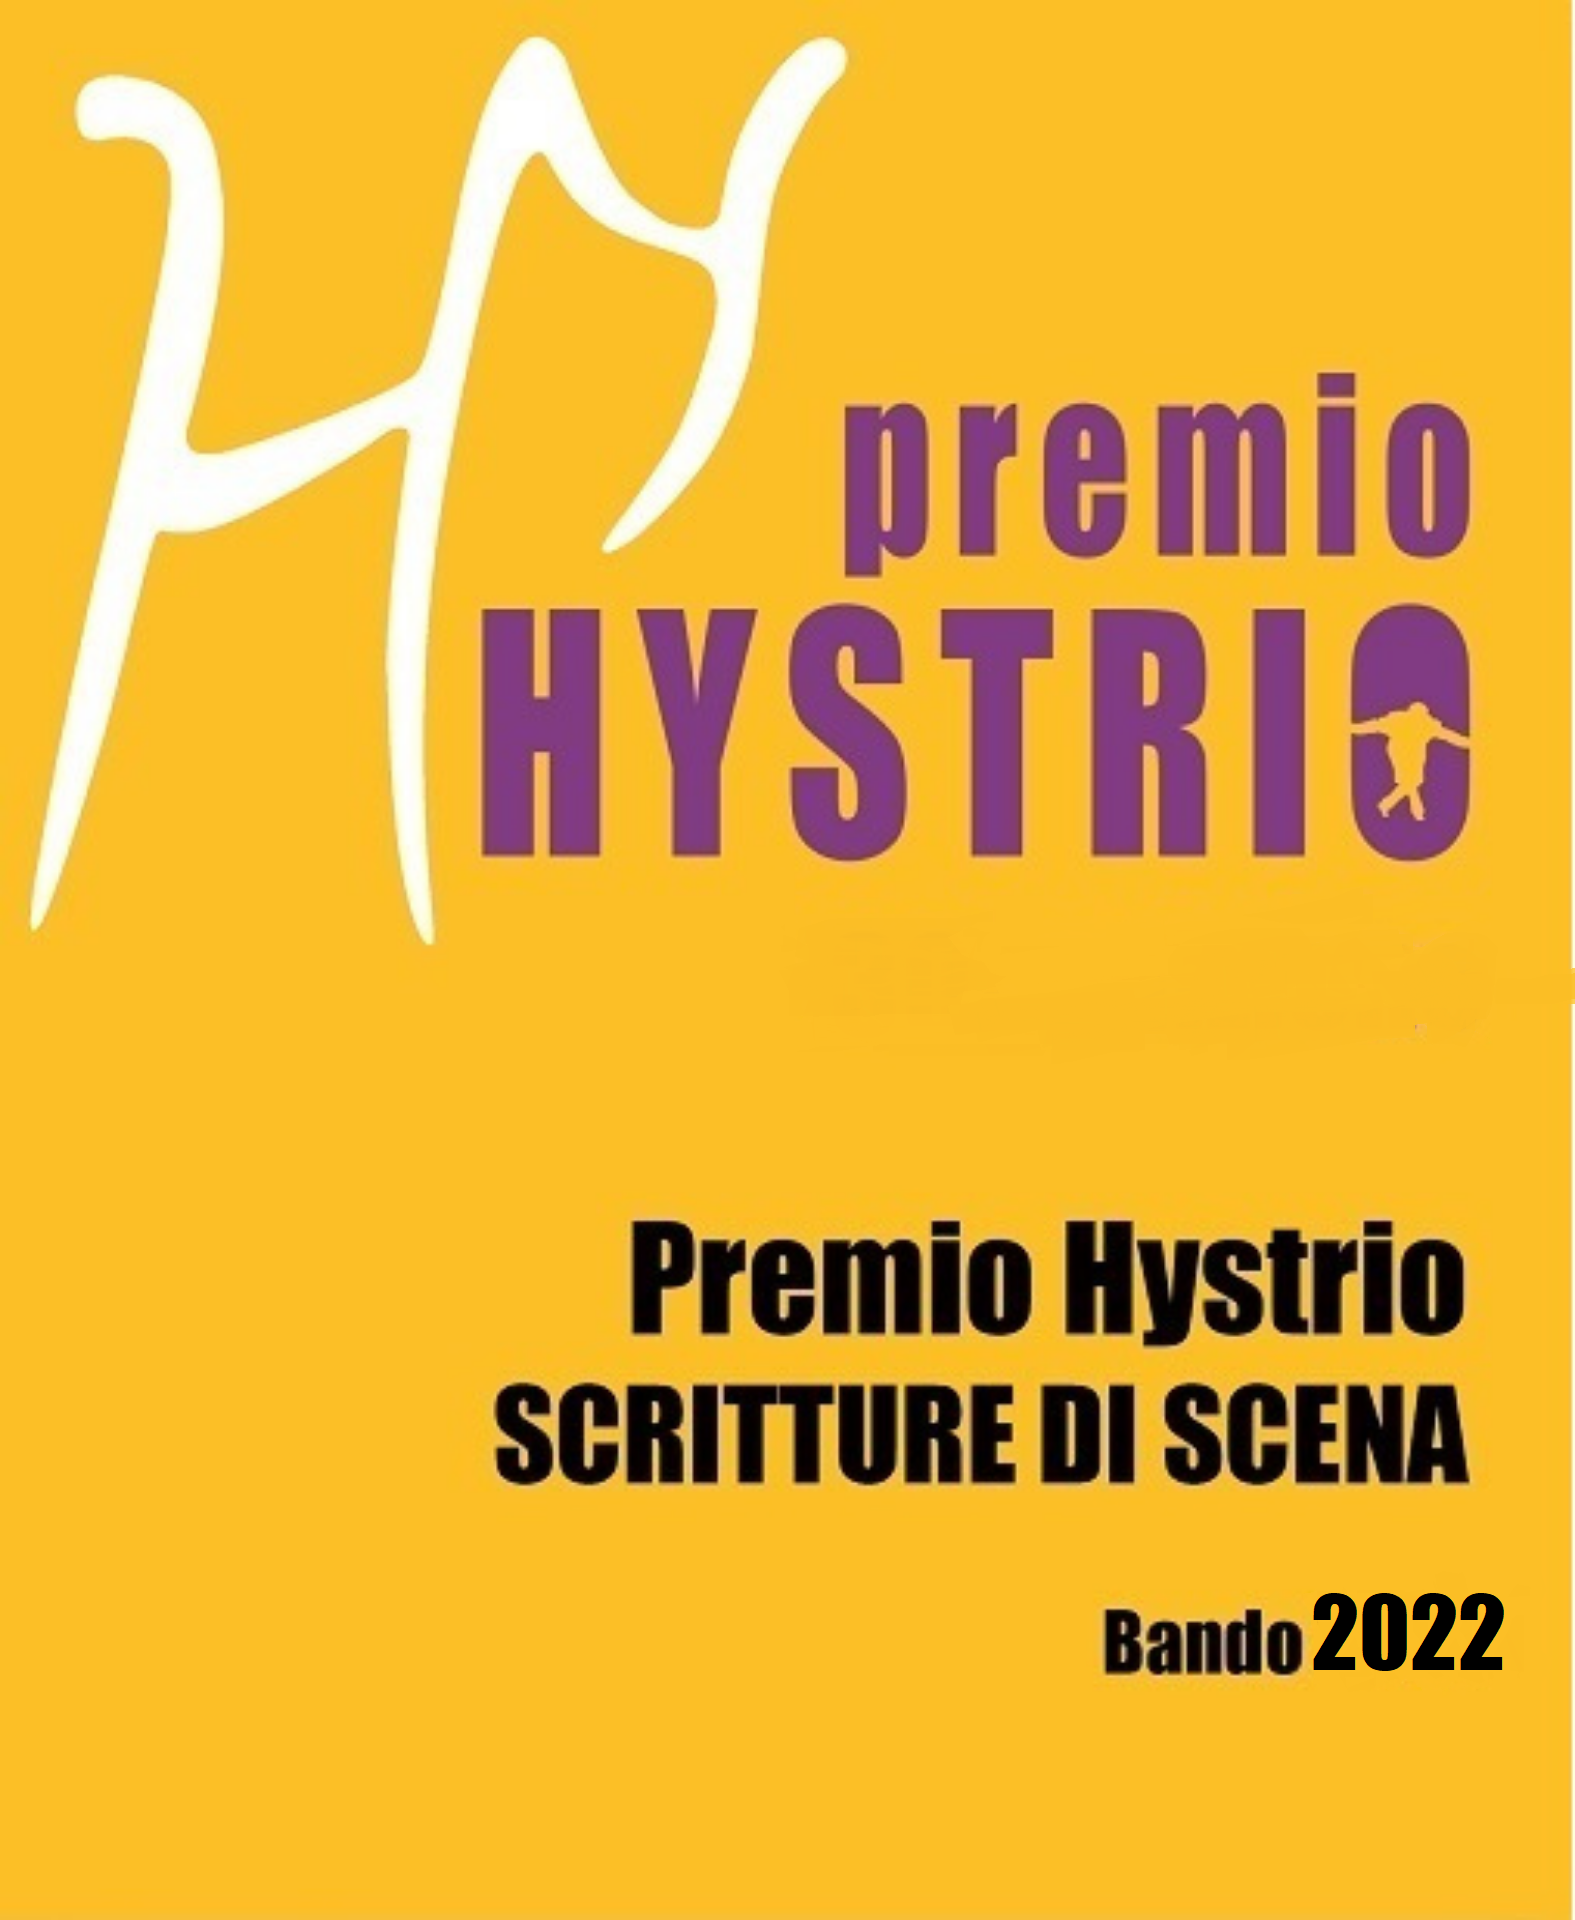 Logo Bando Premio Hystrio Scritture di Scena 2022